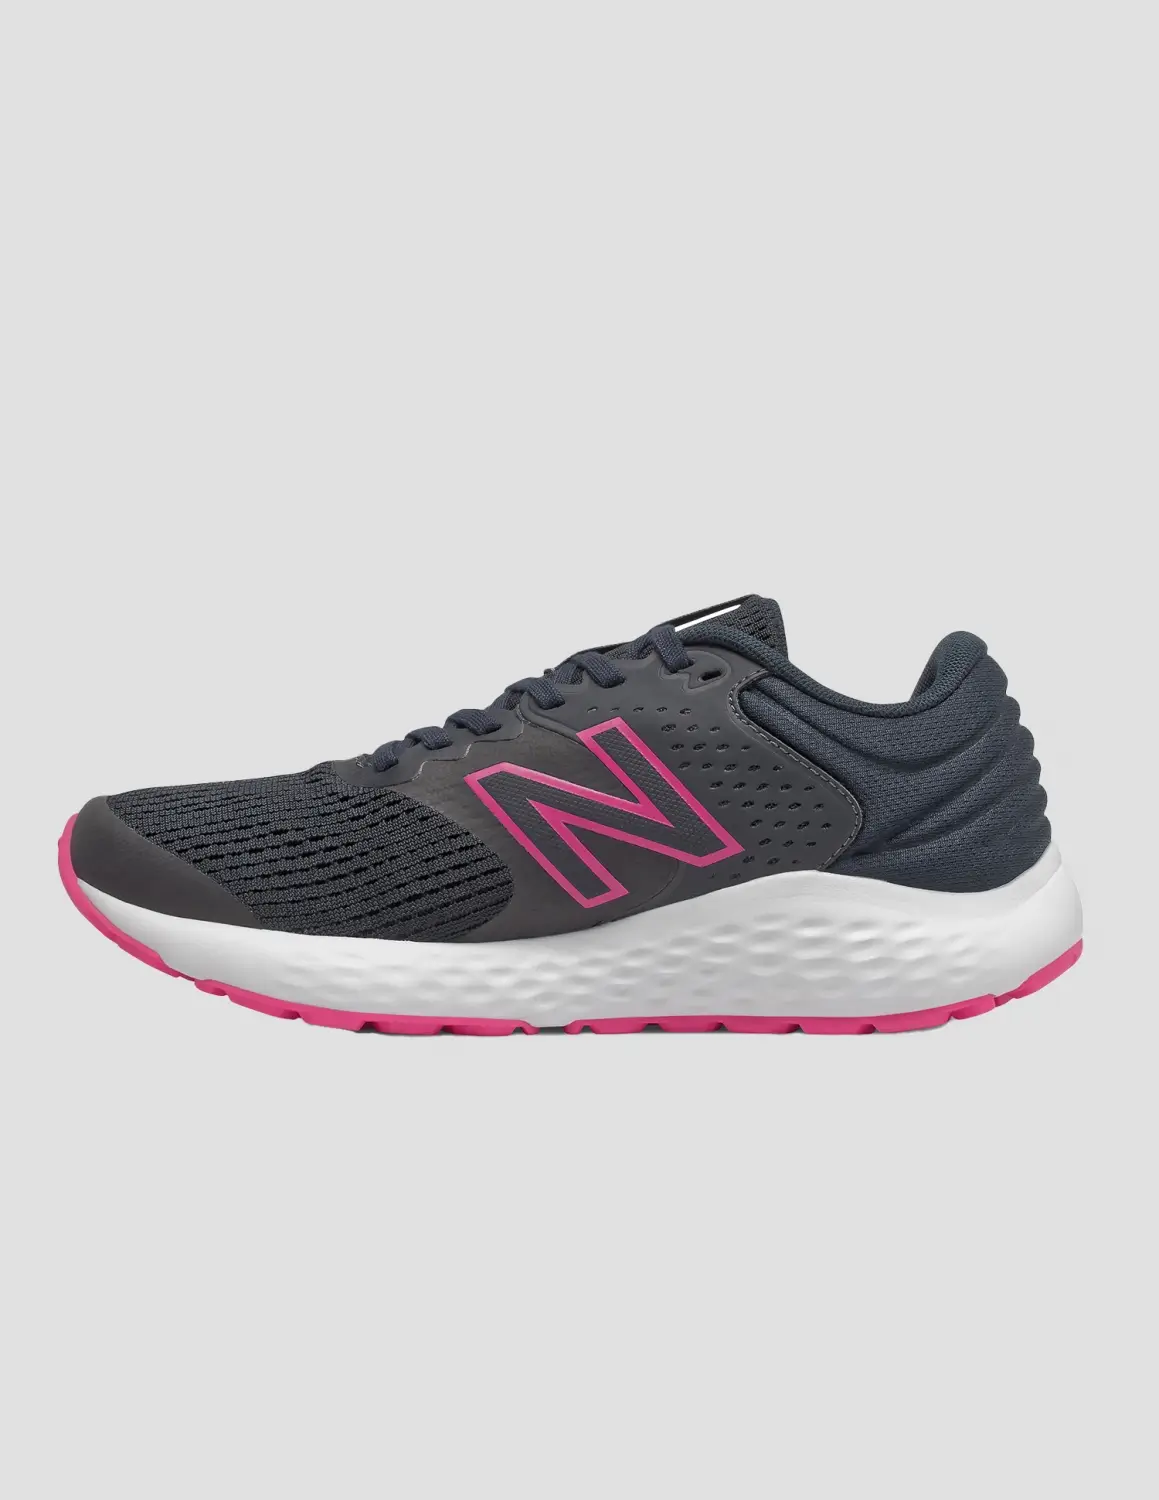 New Balance 520 Gri Kadın Koşu Ayakkabısı    -W520CB7